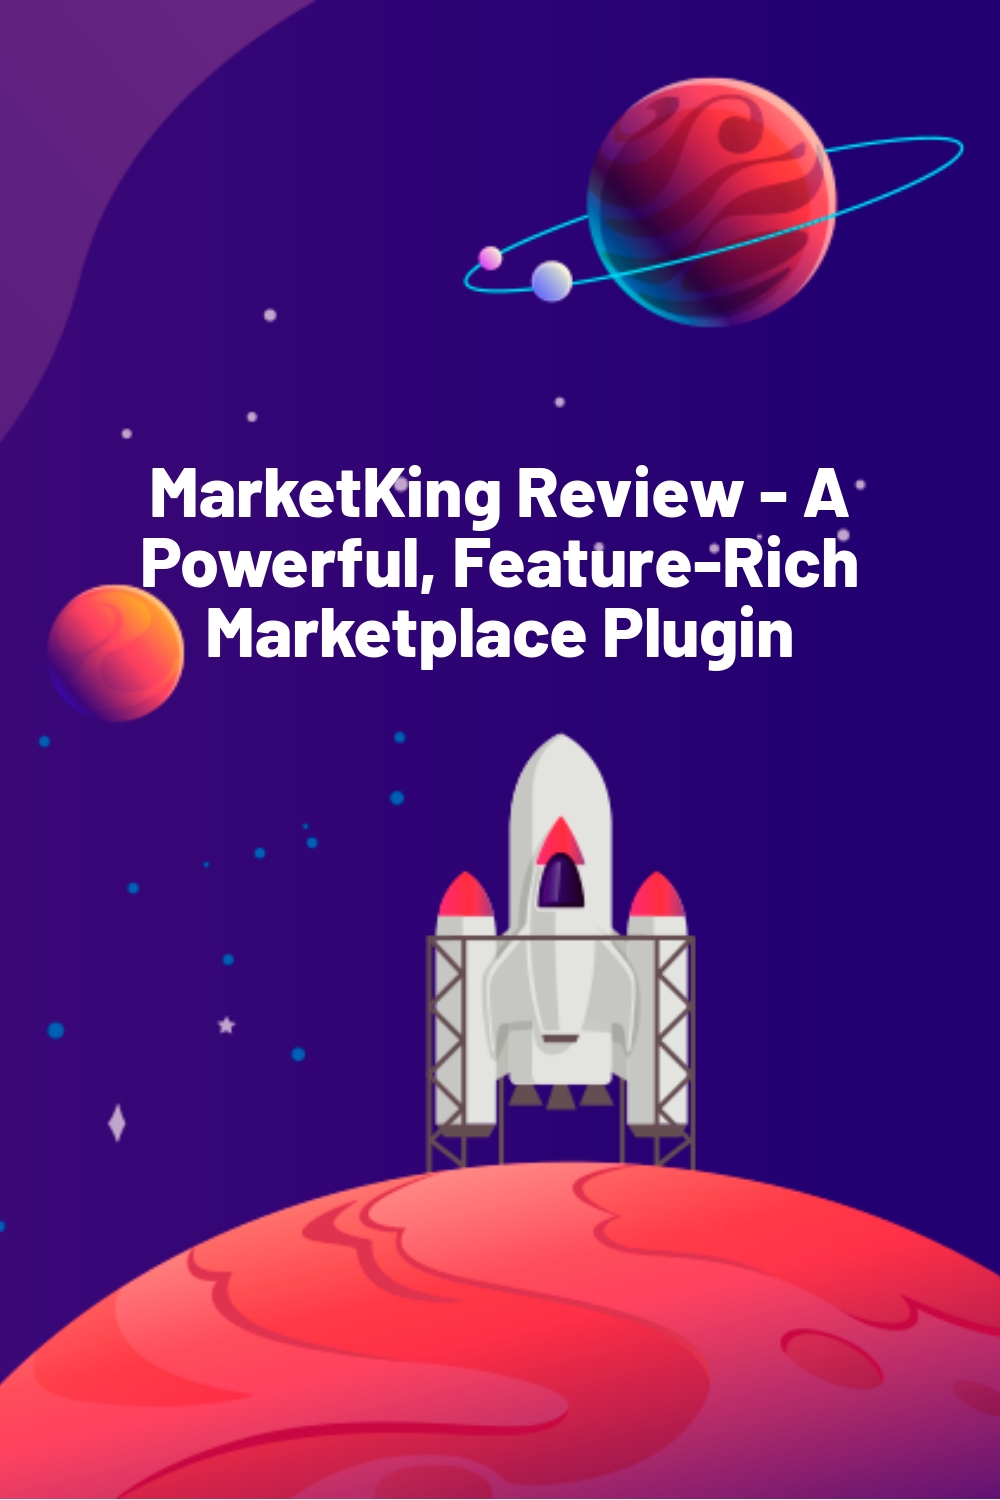 MarketKing Review - Un plugin de place de marché puissant et riche en fonctionnalités